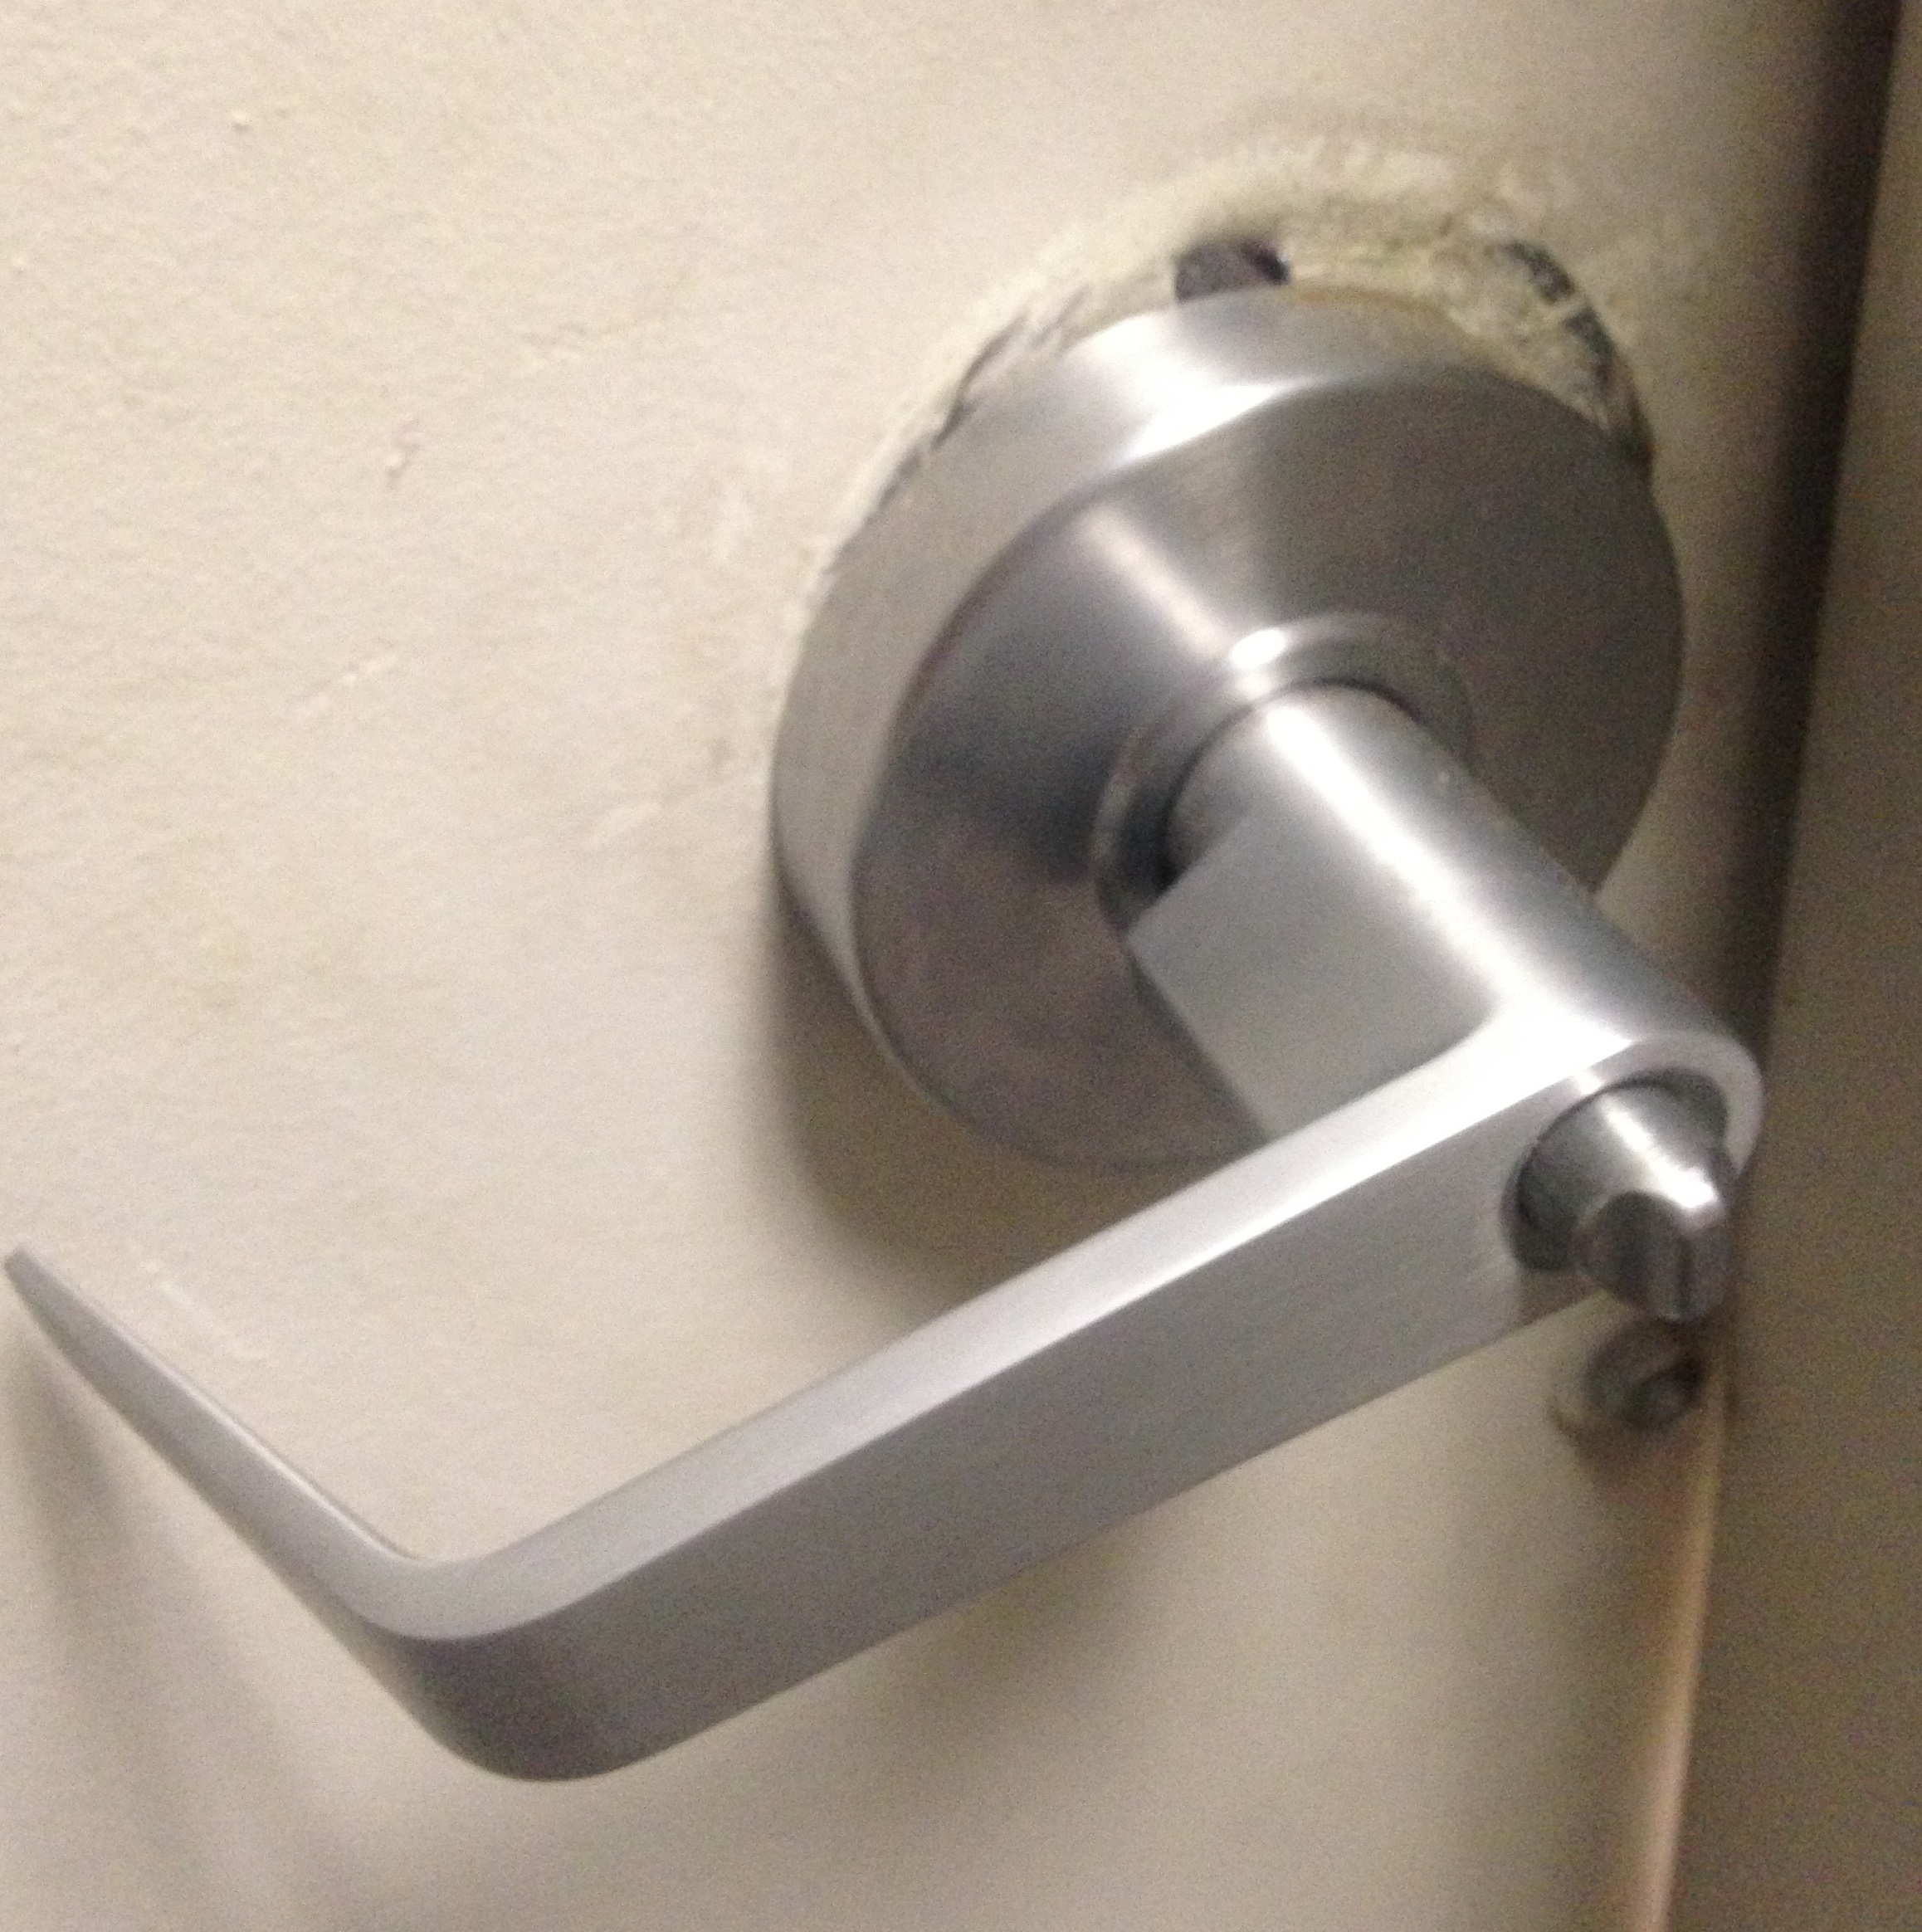 fix broken door knob photo - 11